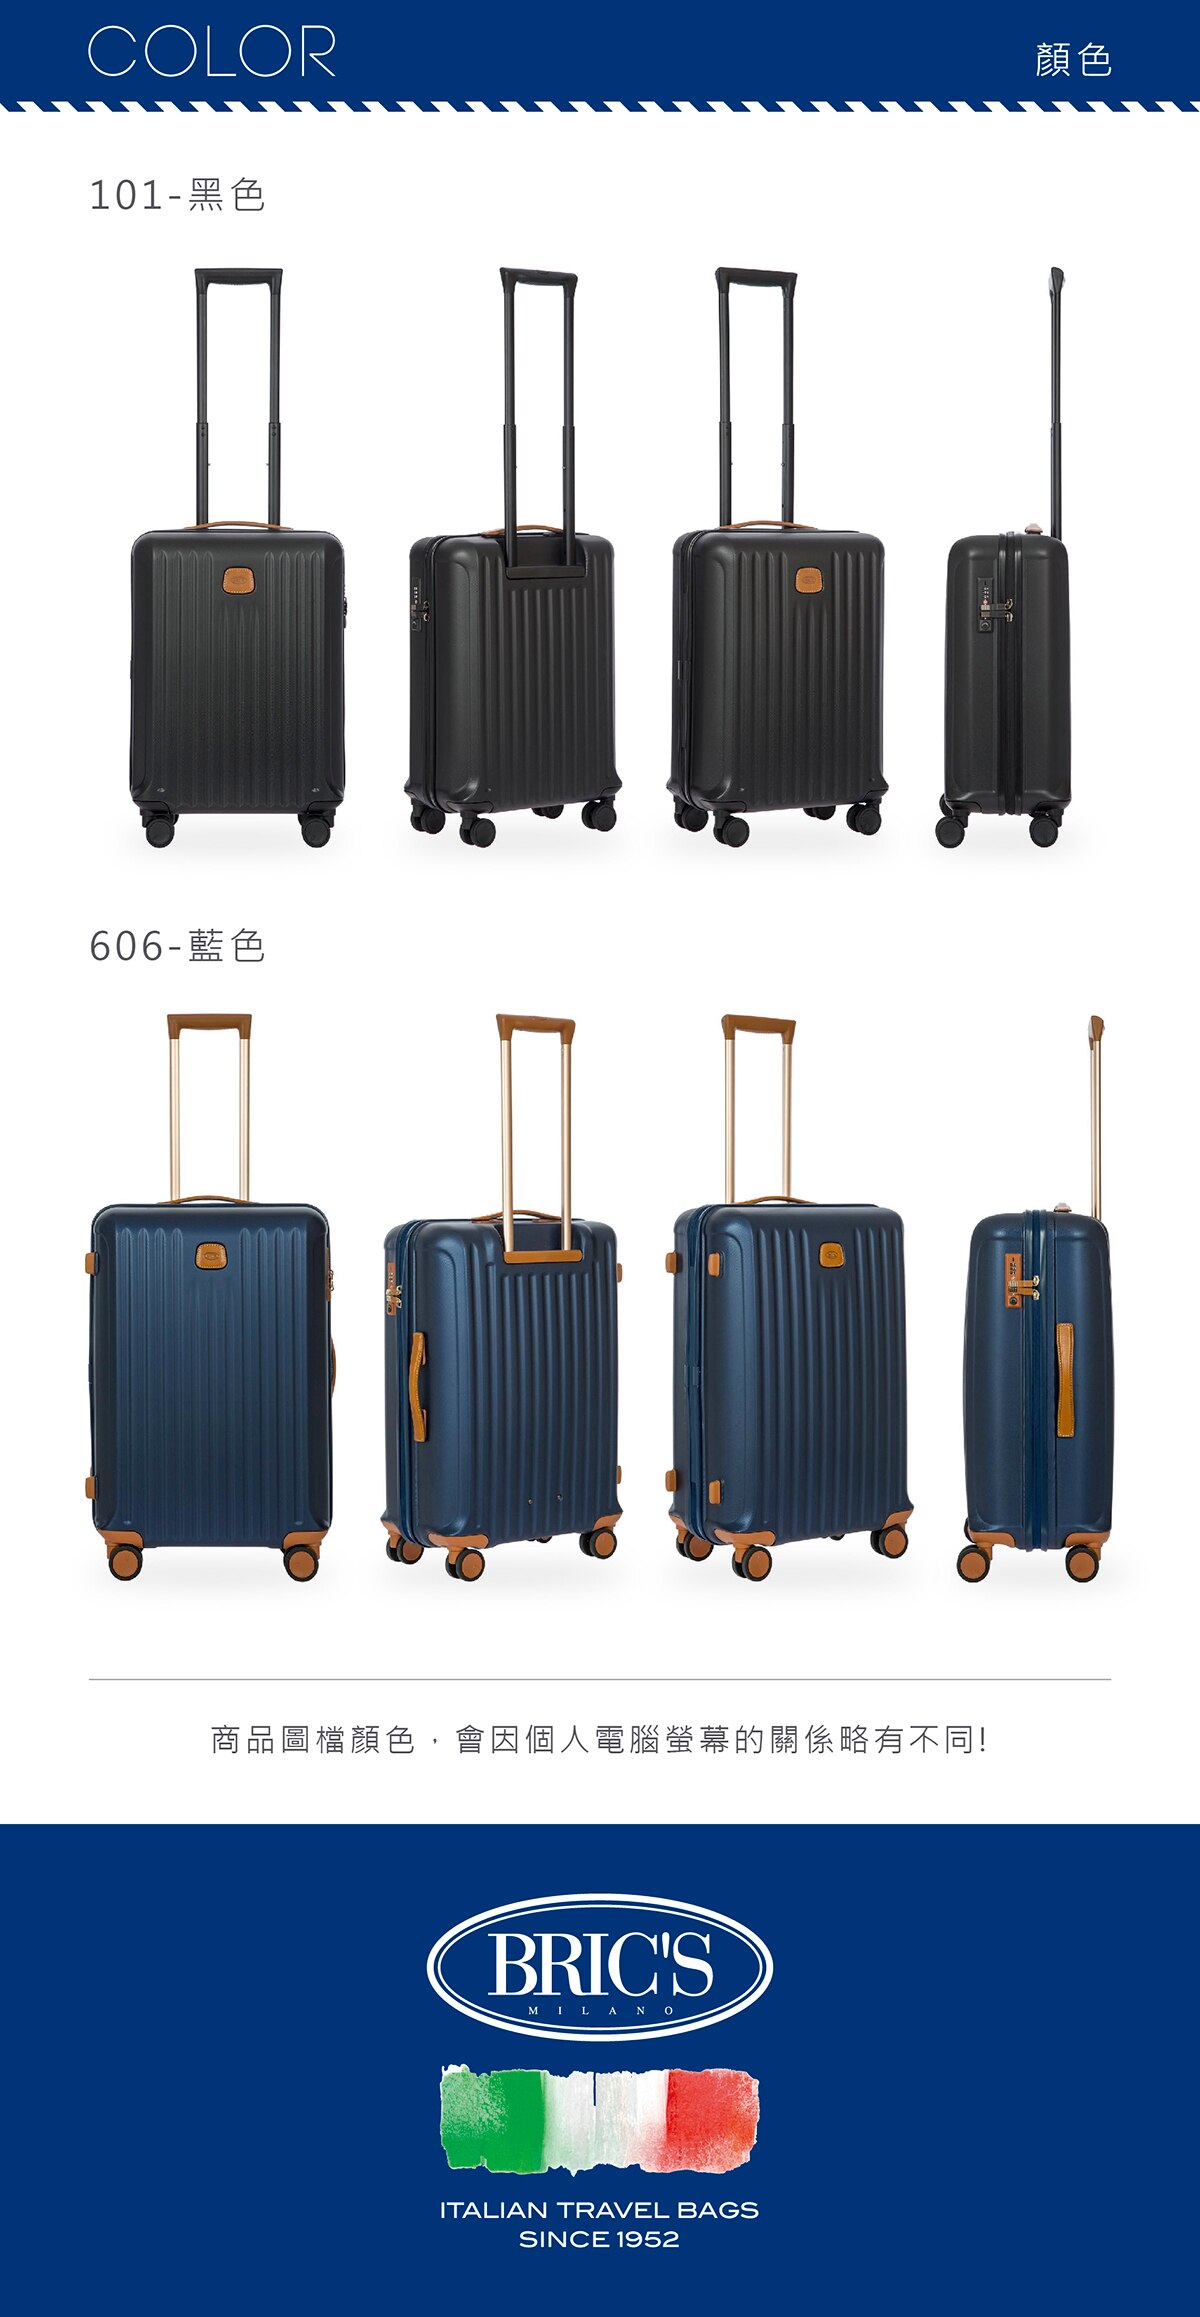 BRIC'S 21吋黑色行李箱,高品質PC材質,CAPRI系列產品,採用高品質PC塑料,防撞,耐衝擊,行李箱堅固耐用品質有保障.